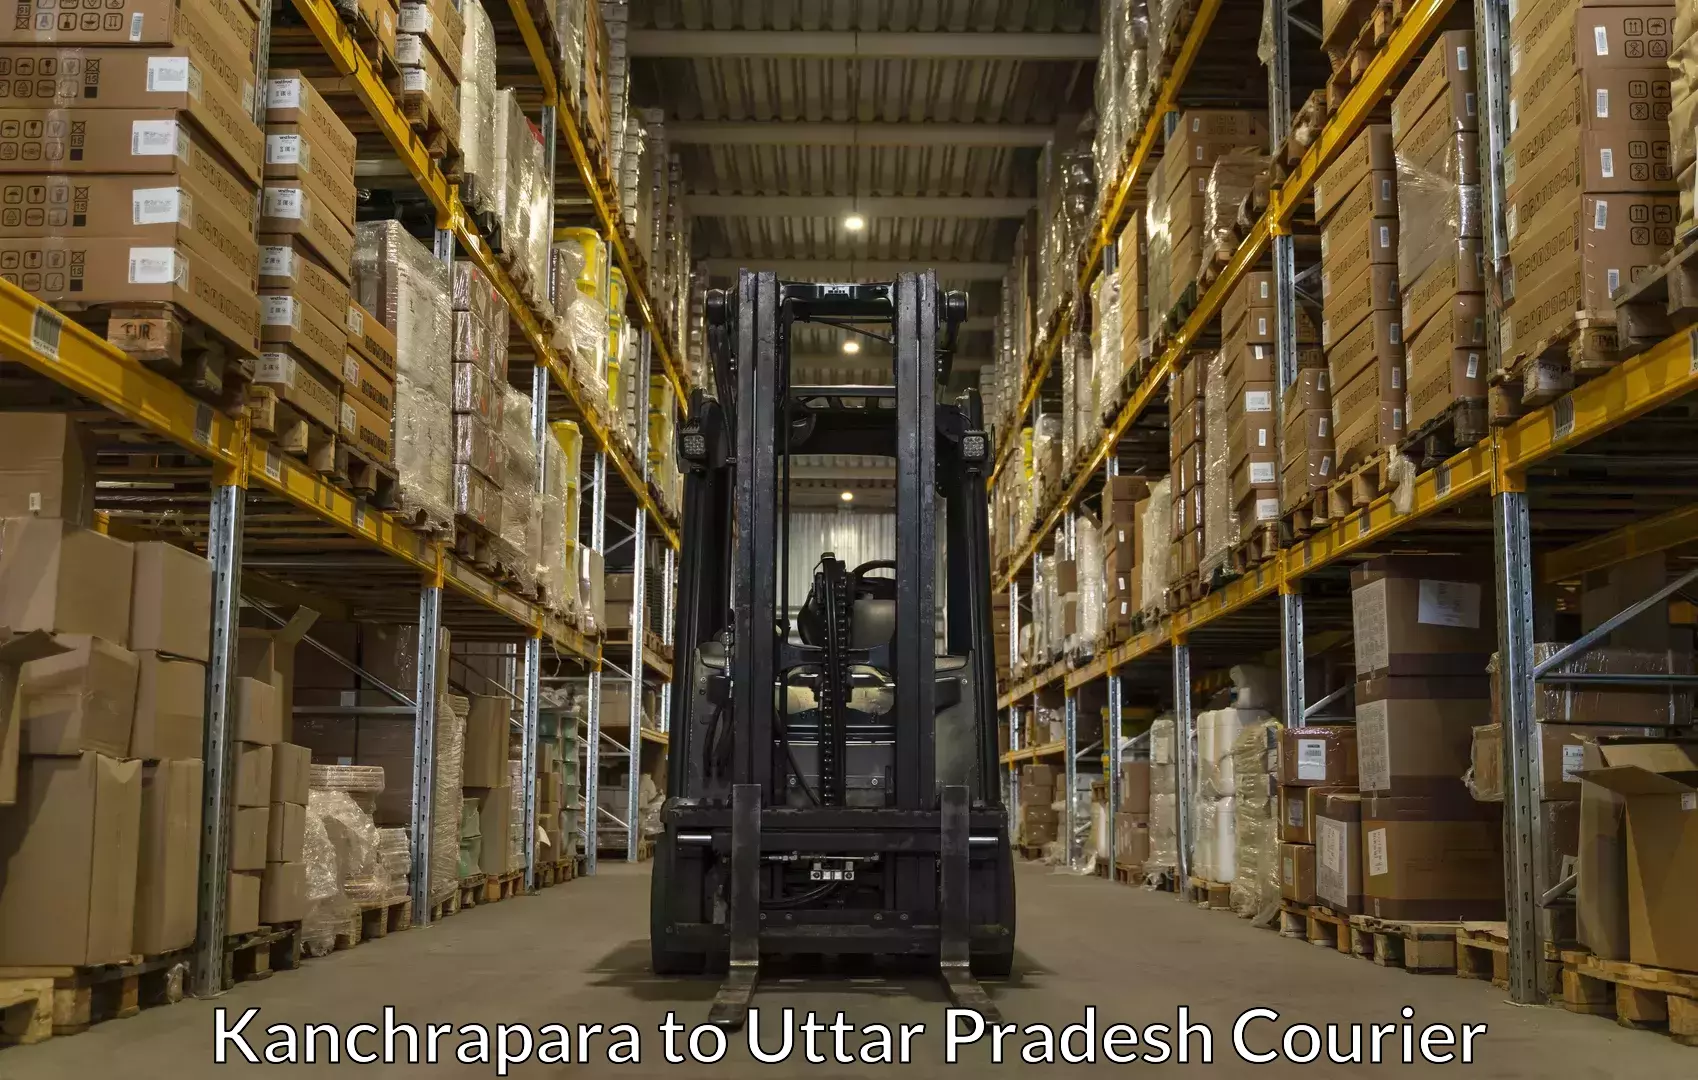 Baggage shipping quotes Kanchrapara to Jyotiba Phule Nagar